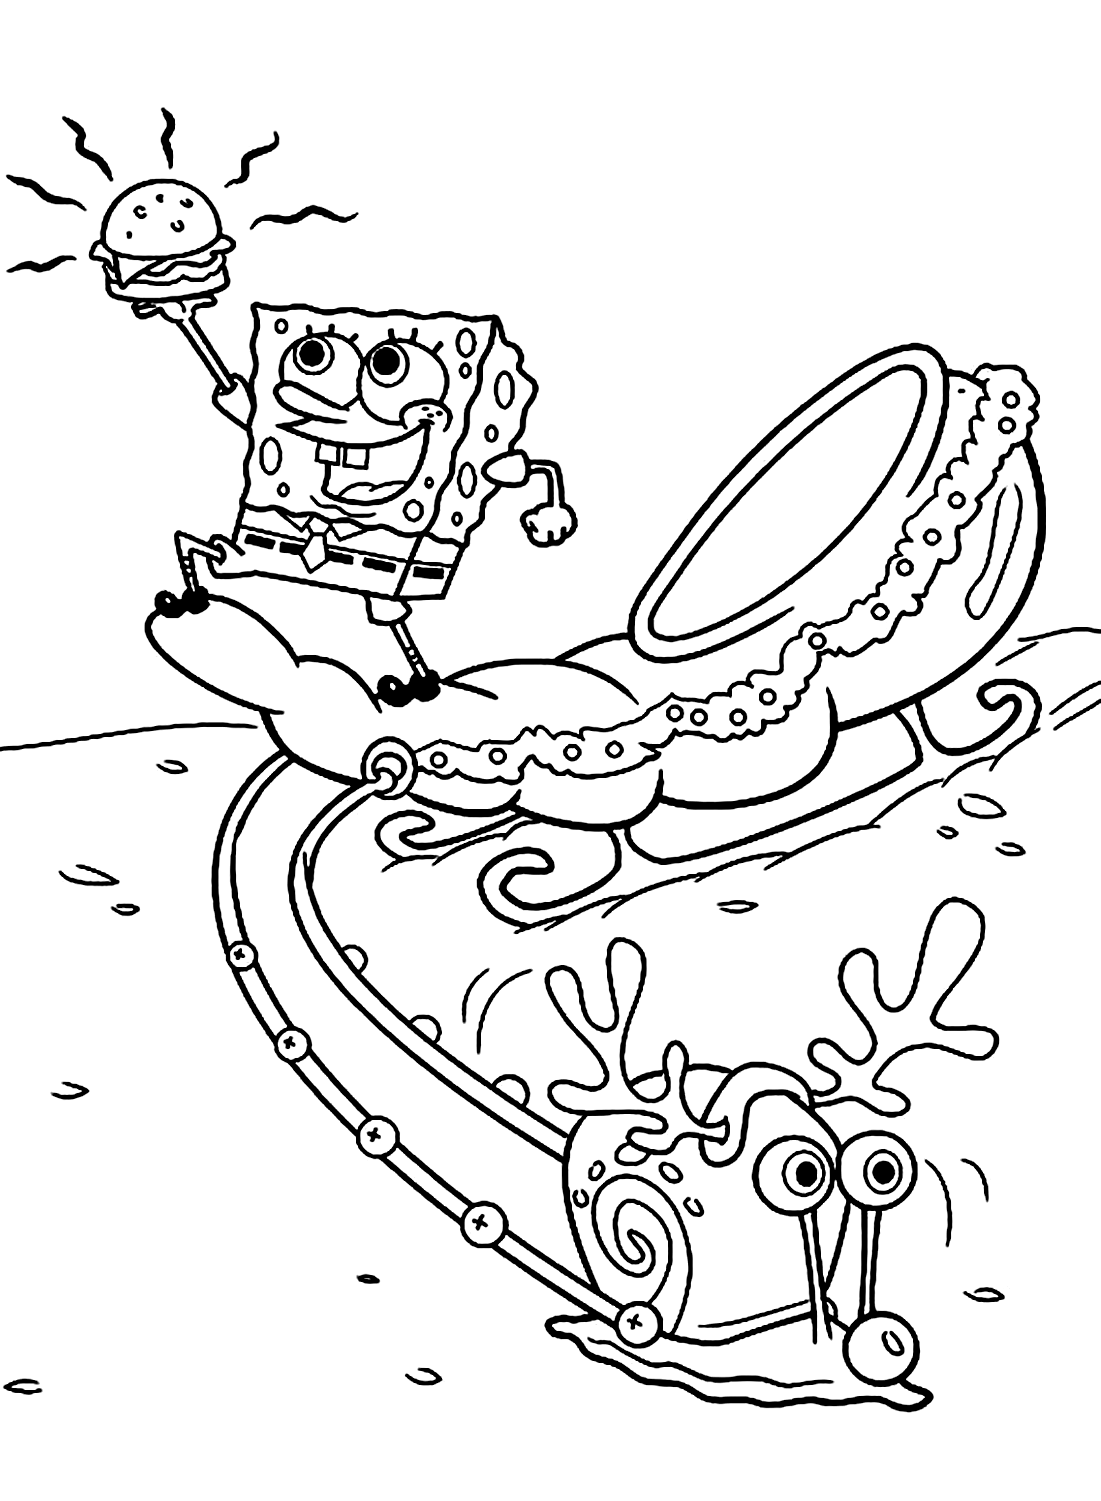 《海绵宝宝》中的彩色海绵宝宝和蜗牛